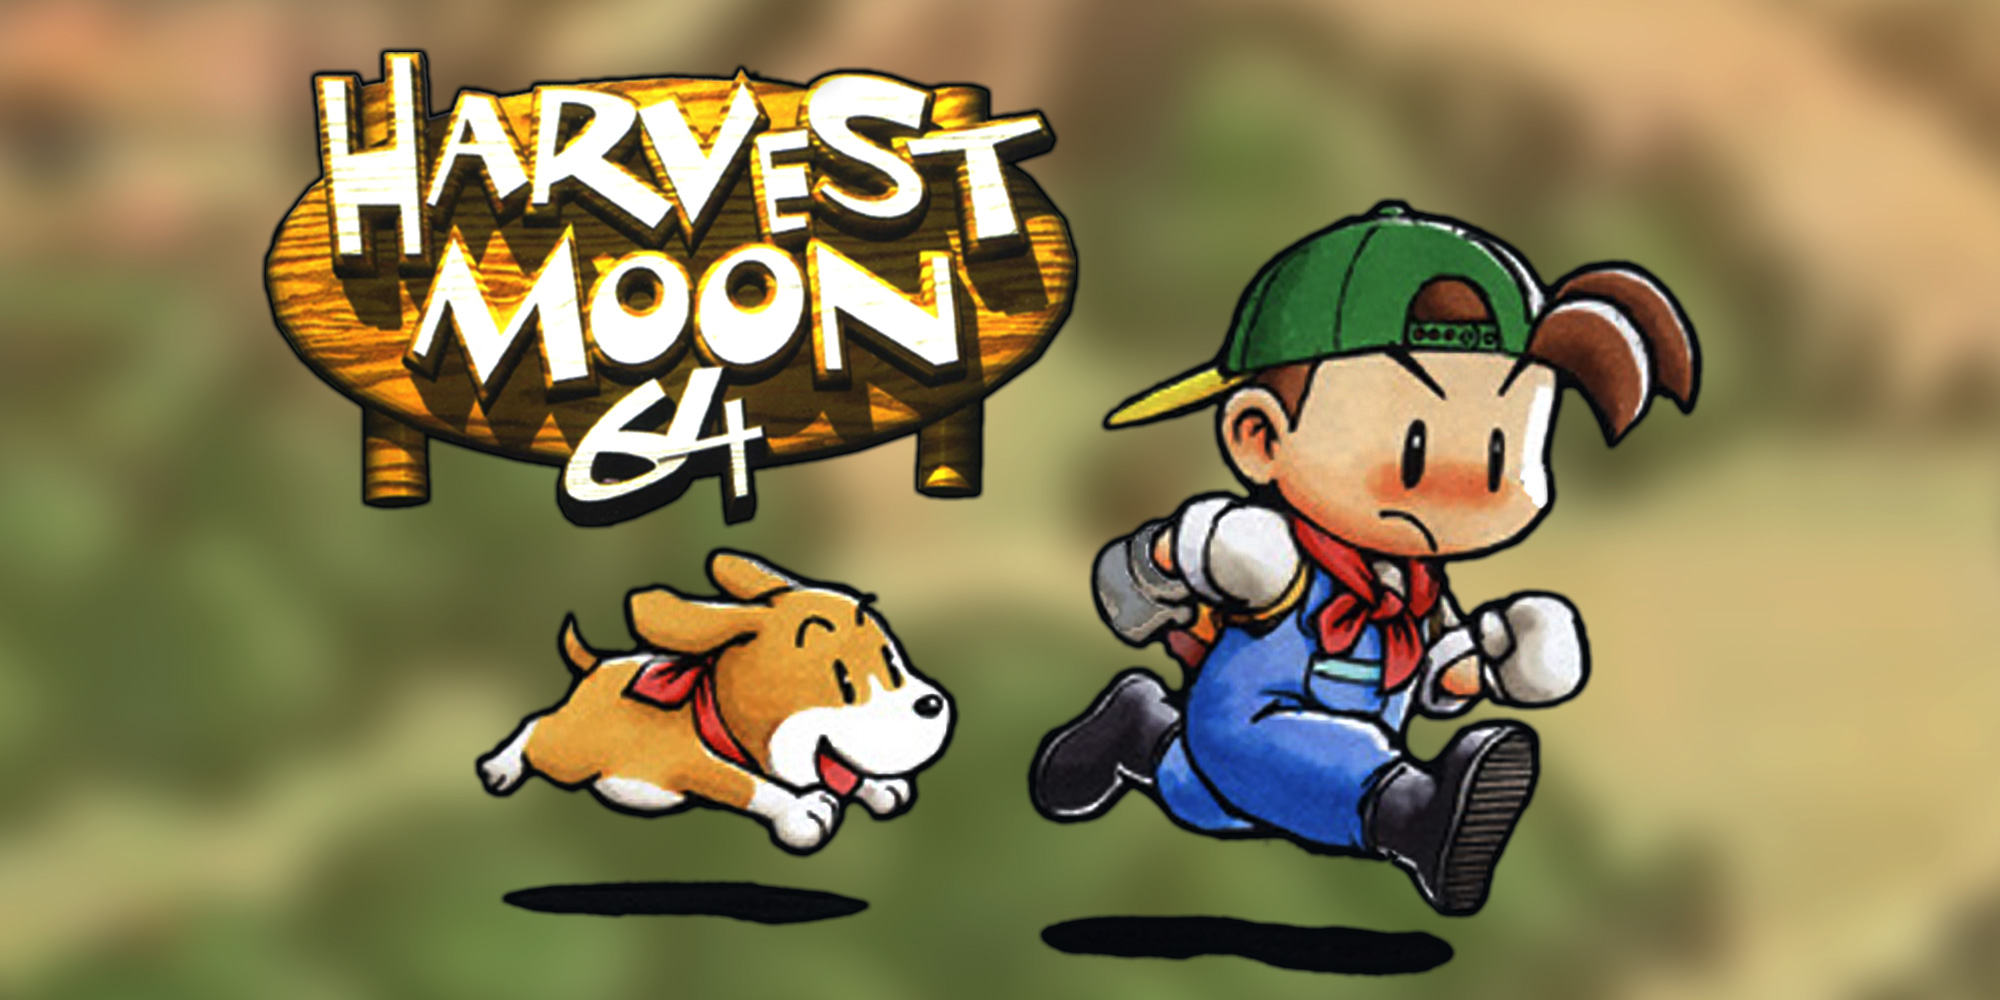 jueves Academia Costa Harvest Moon 64 | Nintendo 64 | Juegos | Nintendo